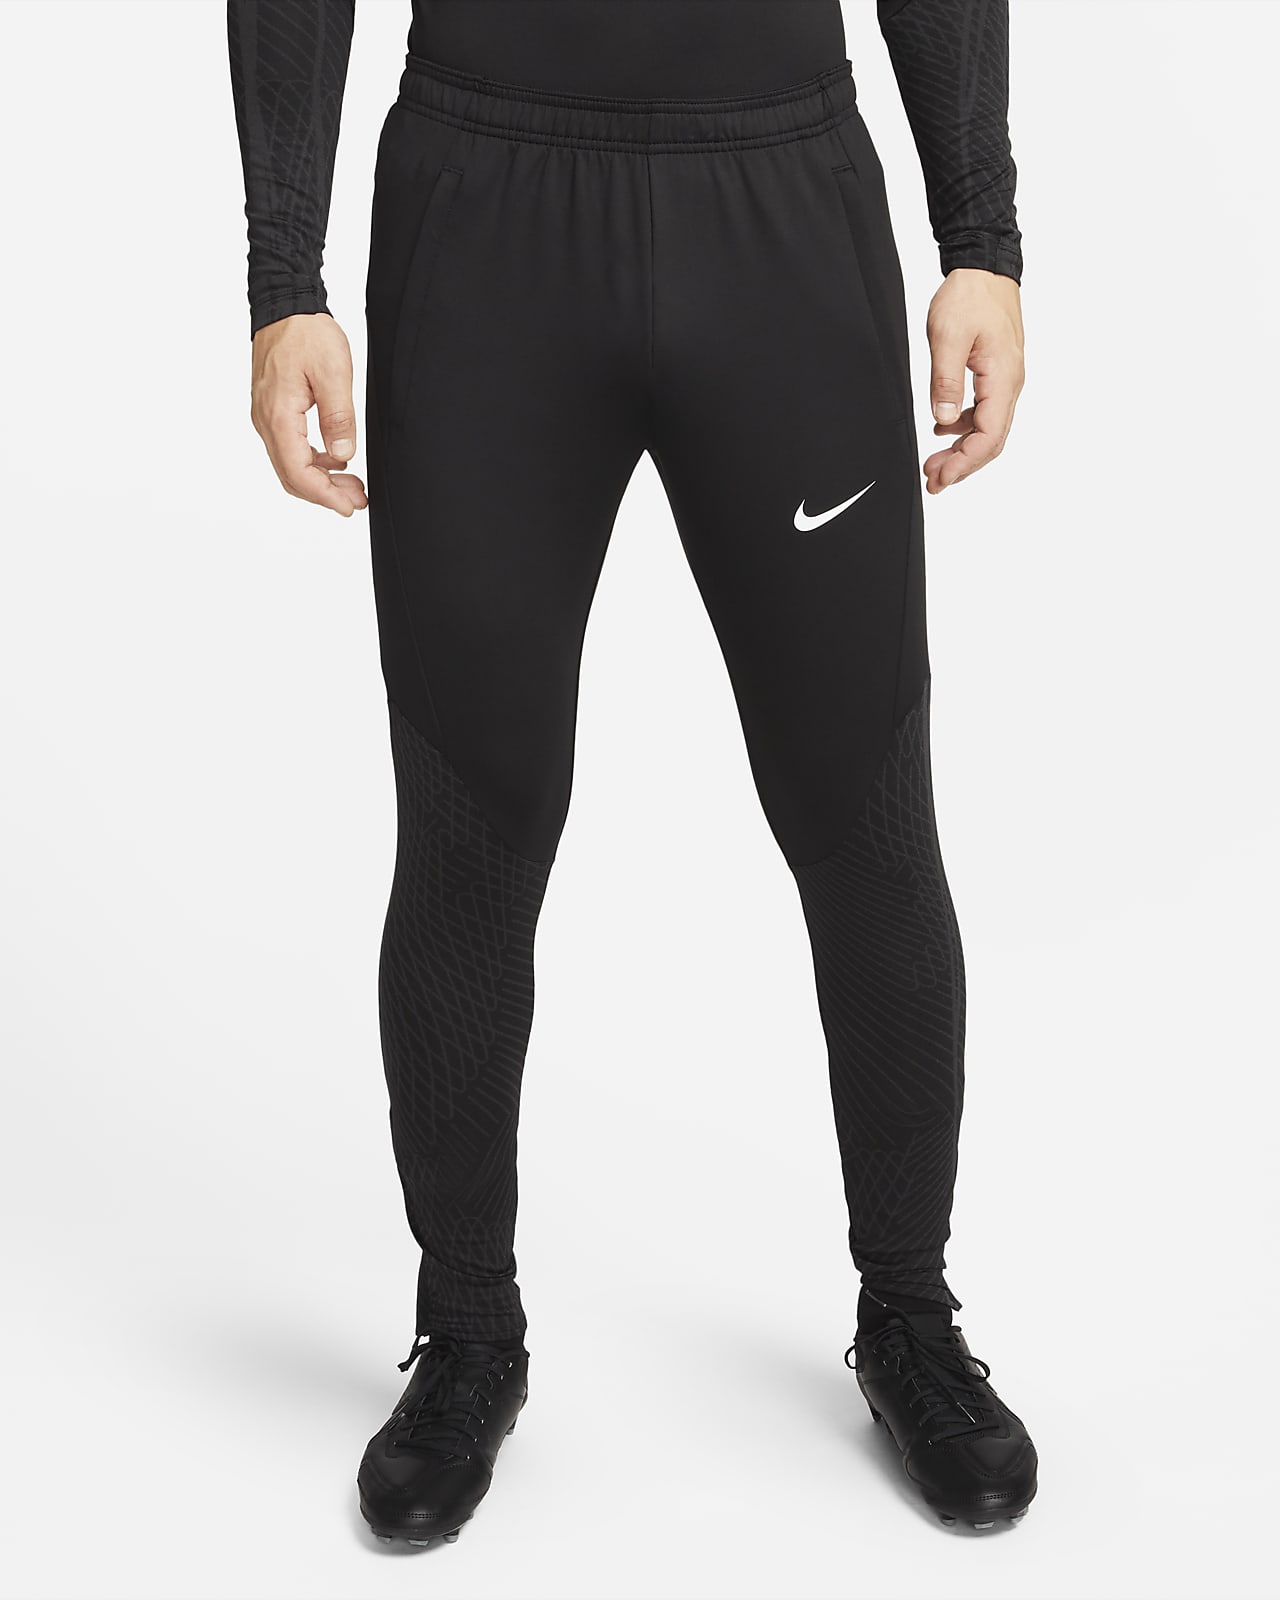 Nike F.C. Dri-FIT Men's Knit Soccer Pants. Nike.com